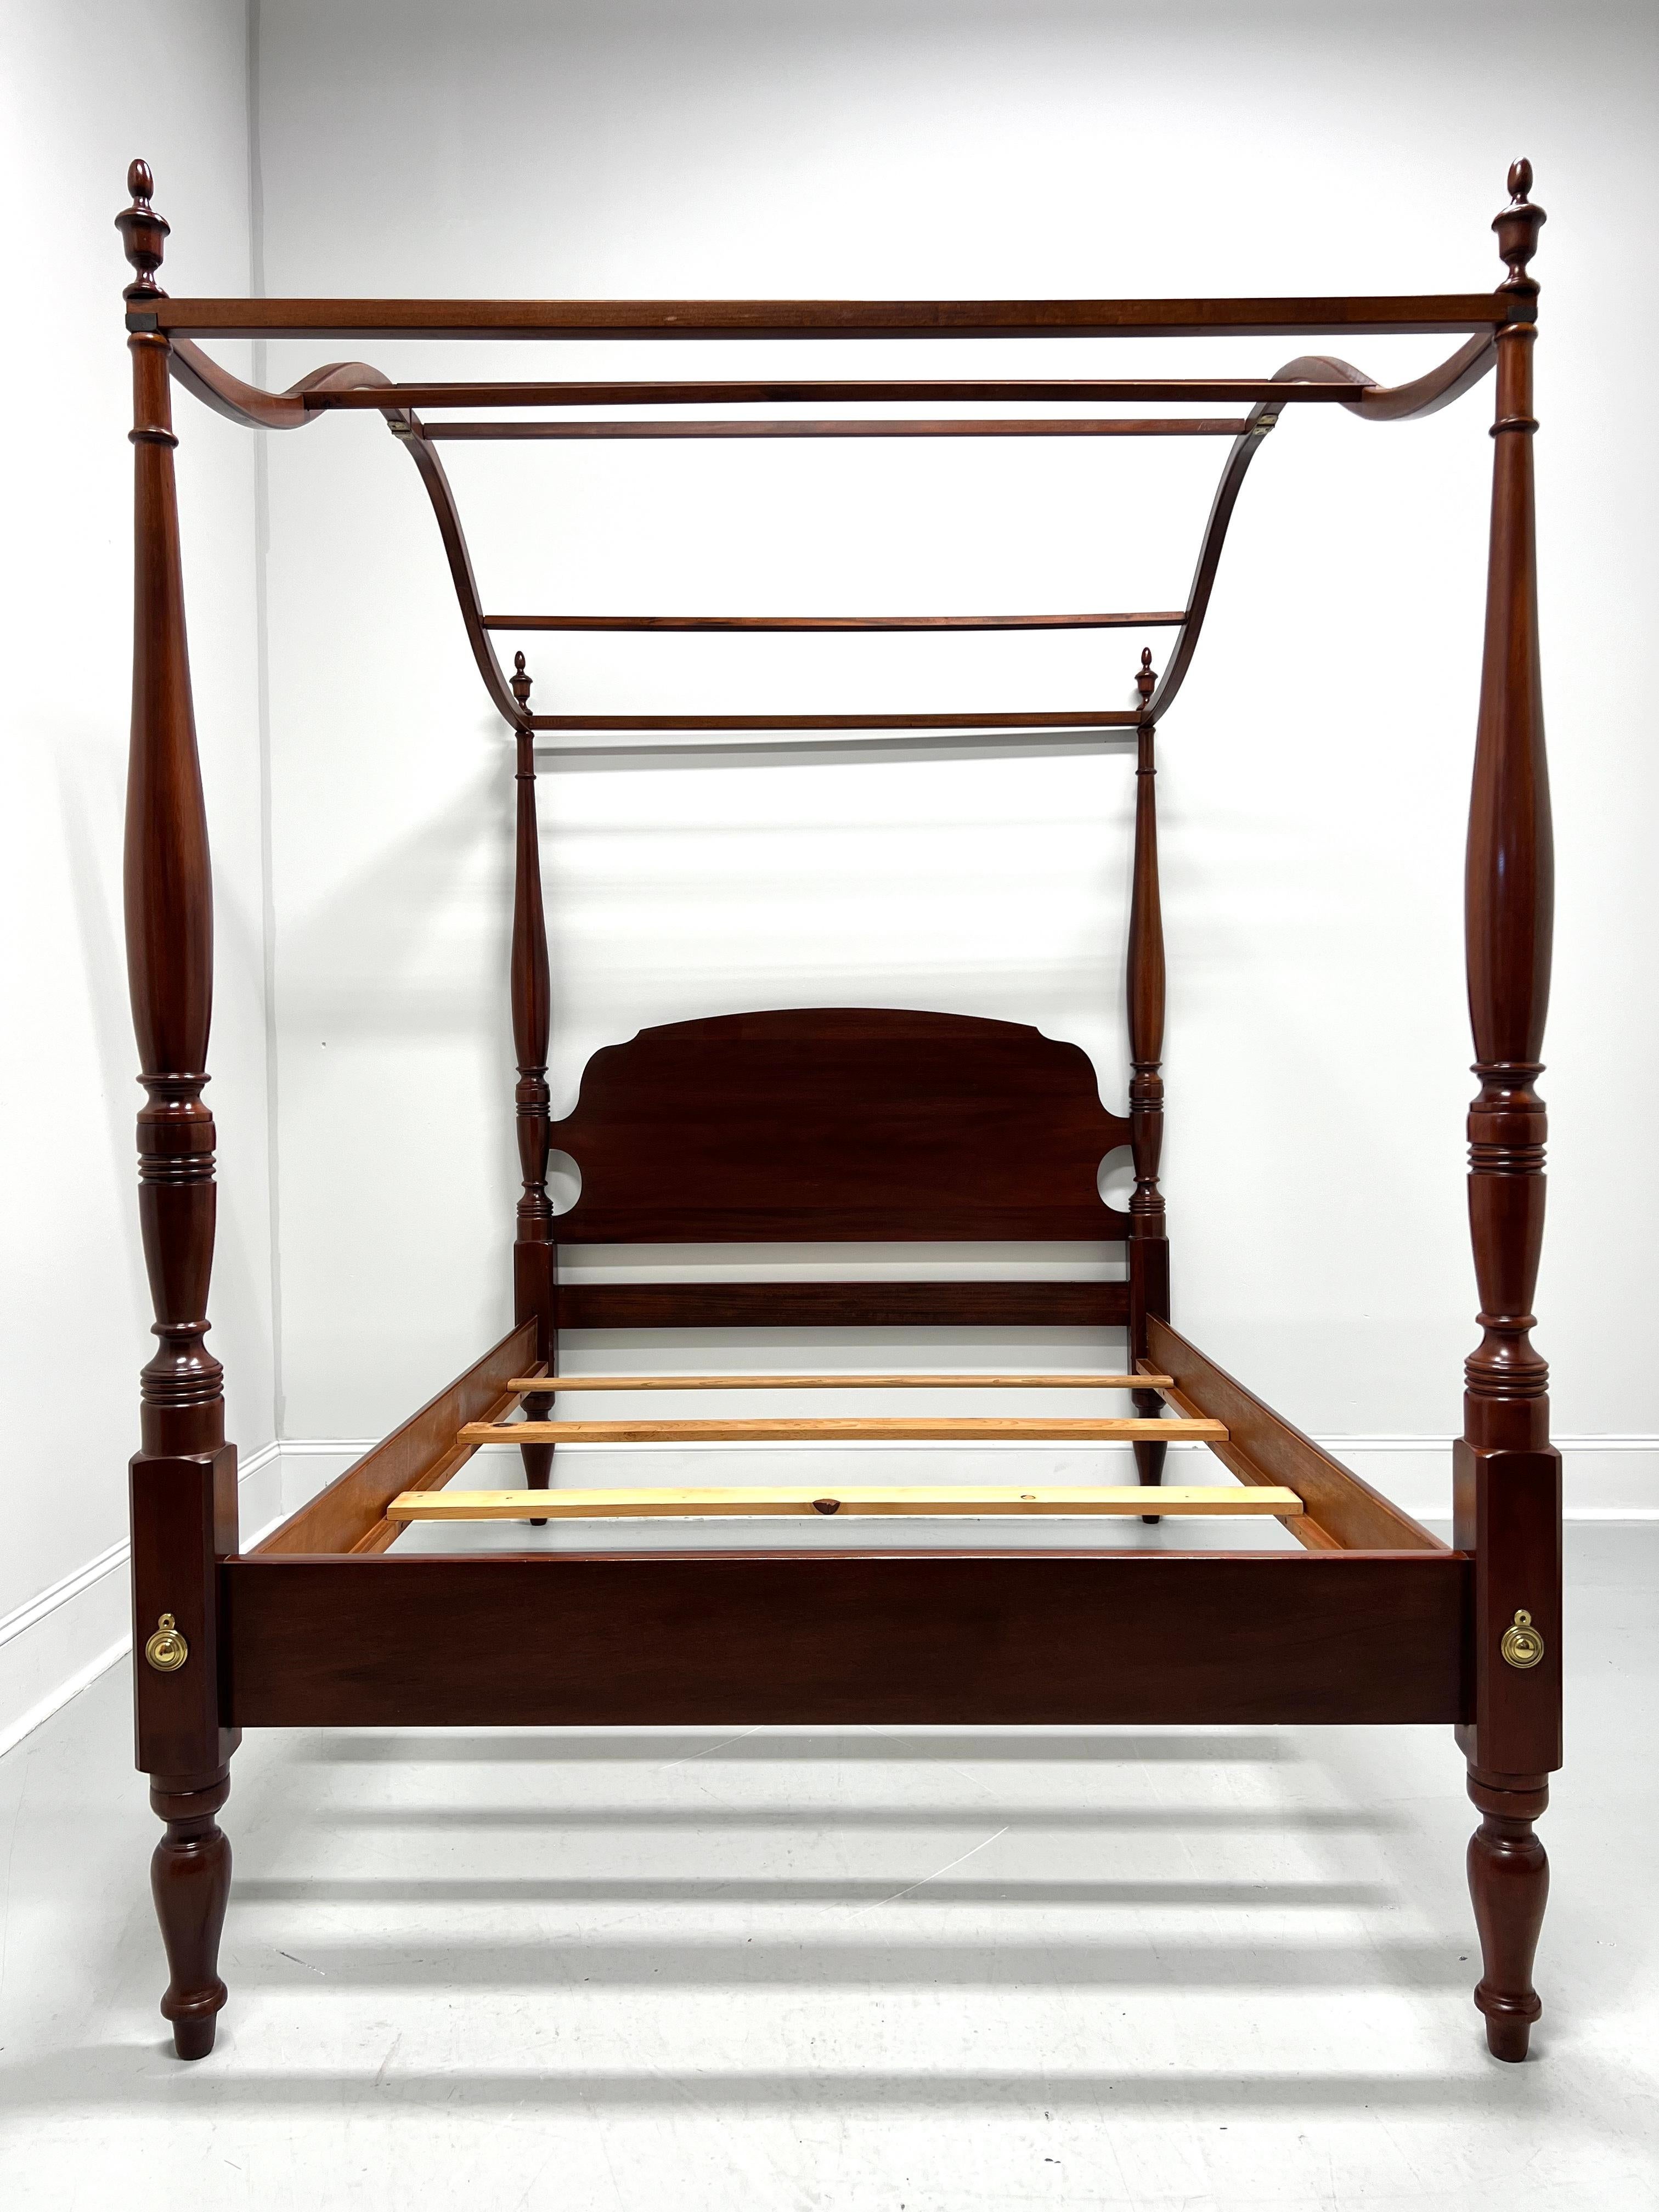 Un lit à baldaquin de style Chippendale avec baldaquin de Link-Taylor, provenant de leur Heirloom Gallery. Tête de lit en acajou massif avec arc sculpté, quatre poteaux tournés surmontés de fleurons, un baldaquin ouvert en bois arqué, des ferrures